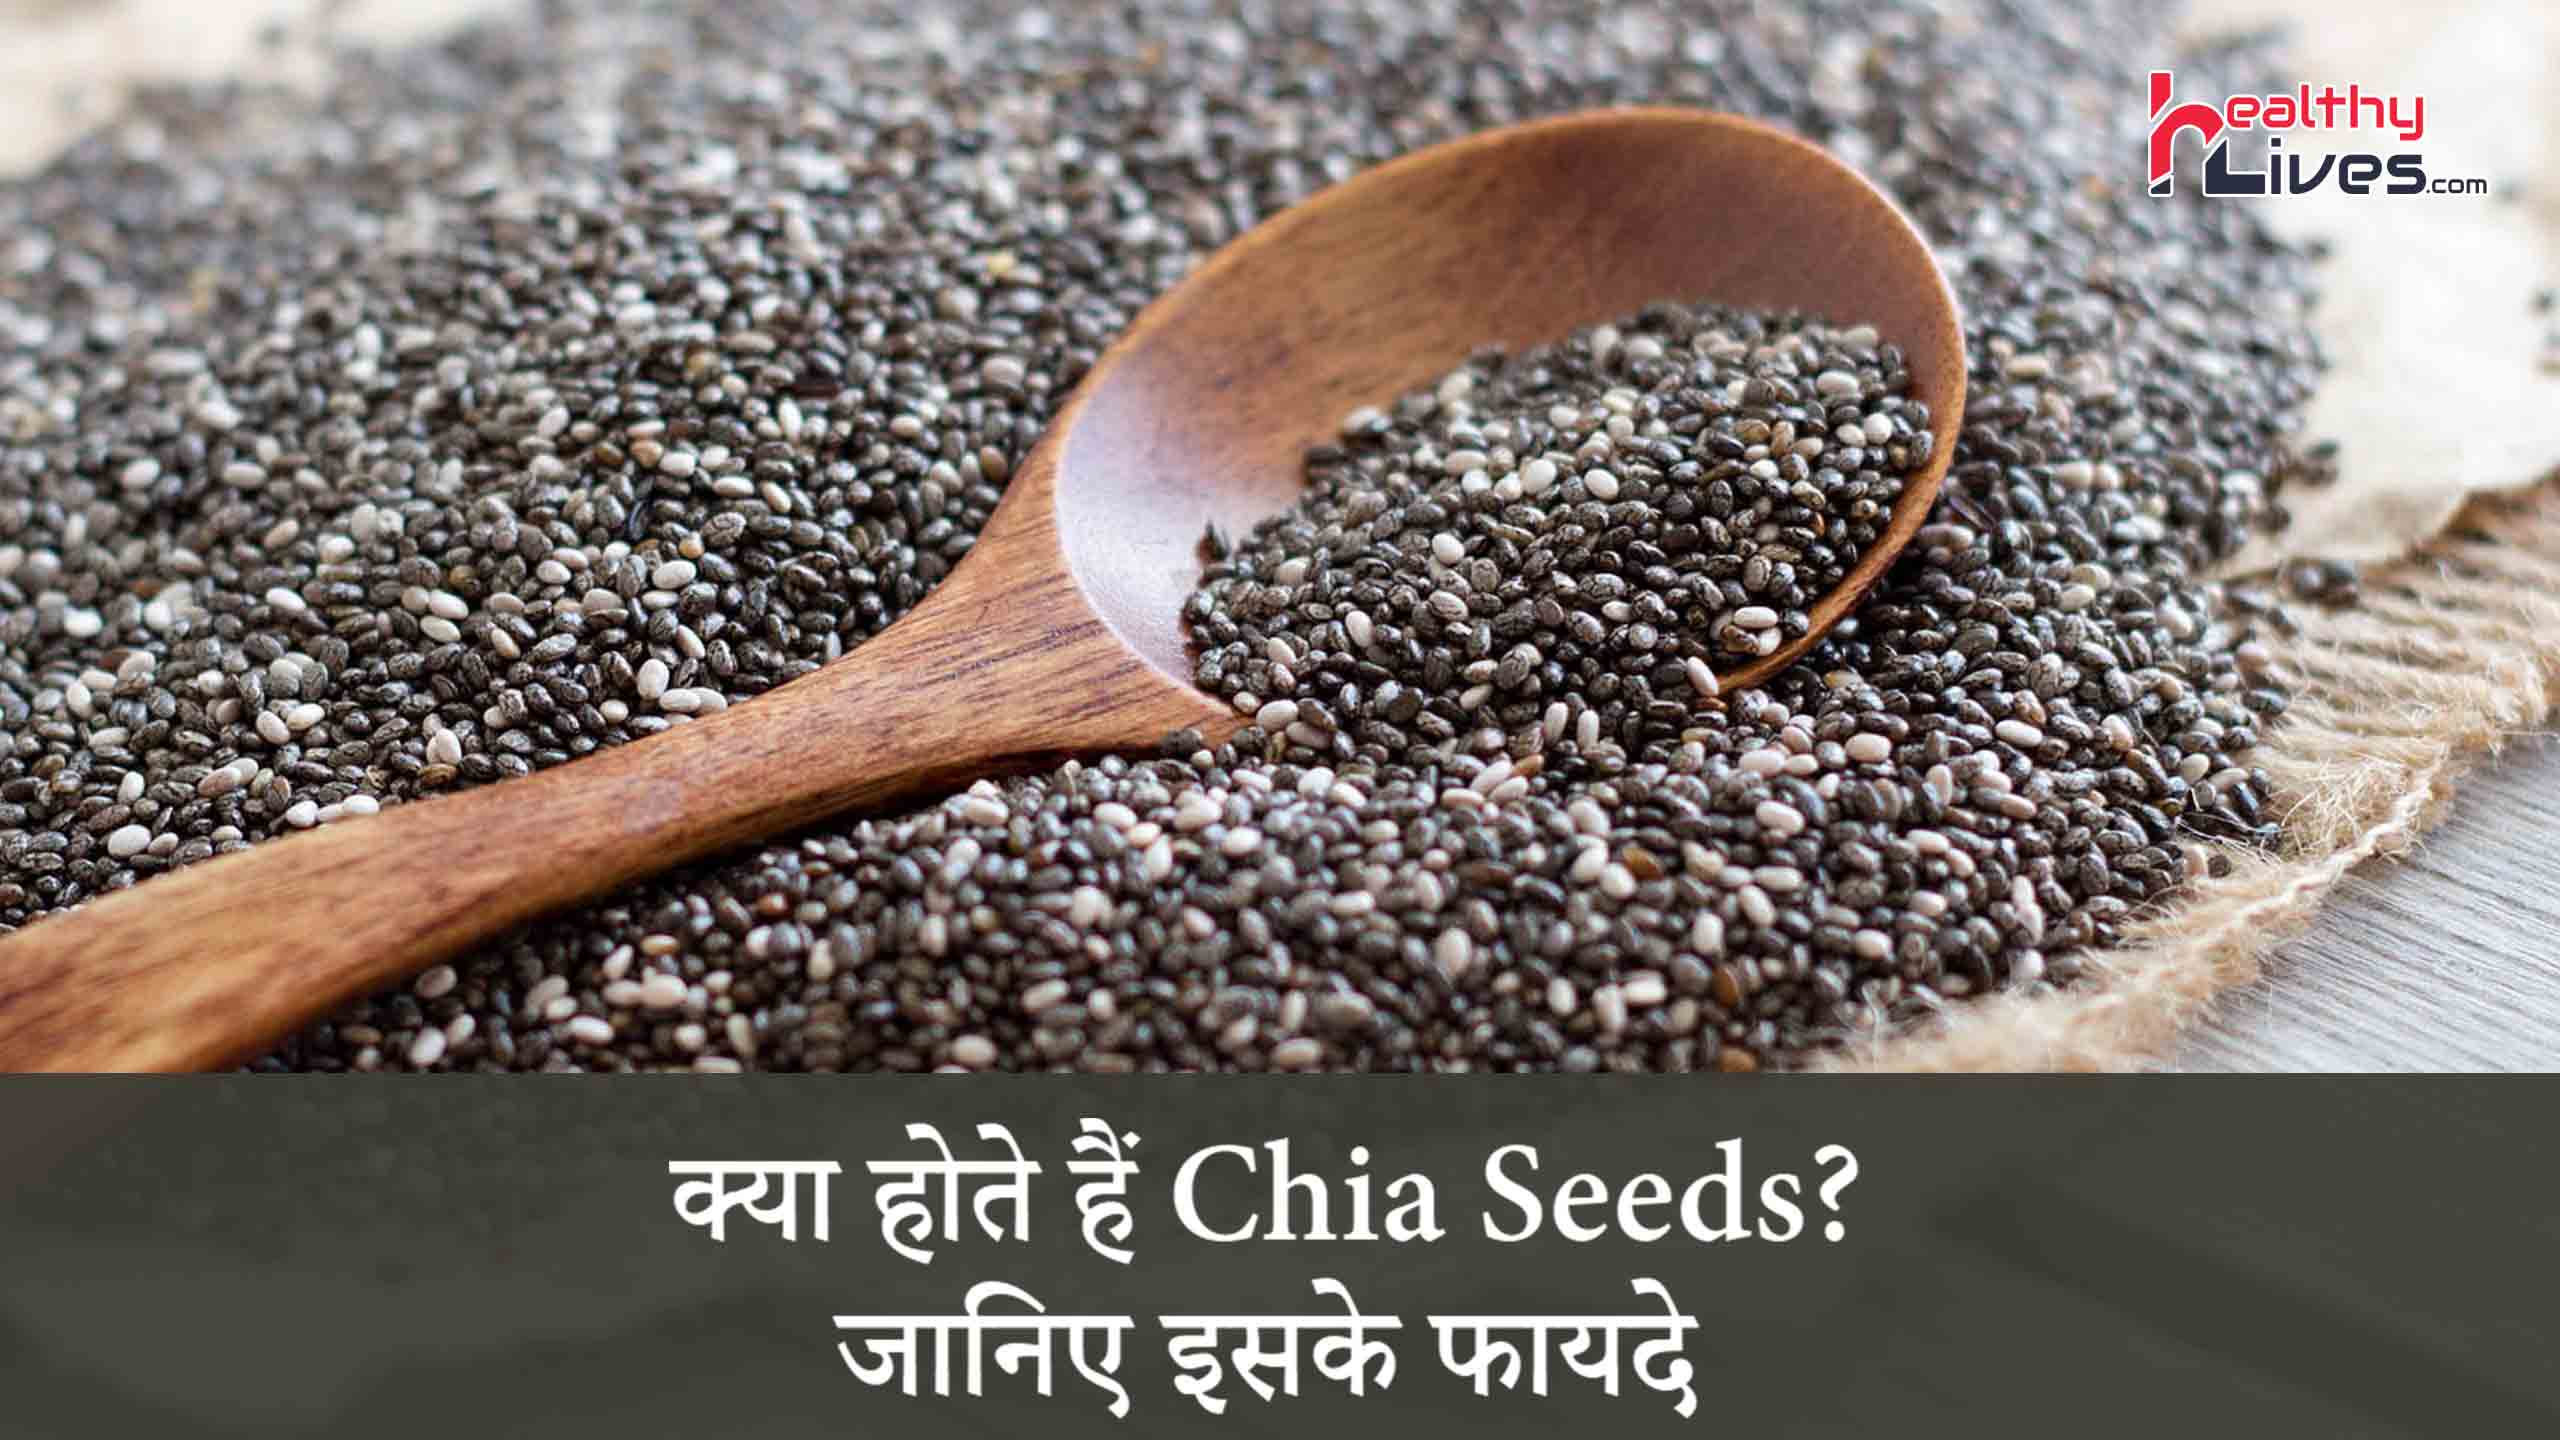 Chia Benefits in Hindi: स्वास्थ्यवर्धक गुणों से भरपूर है चिया के बीज